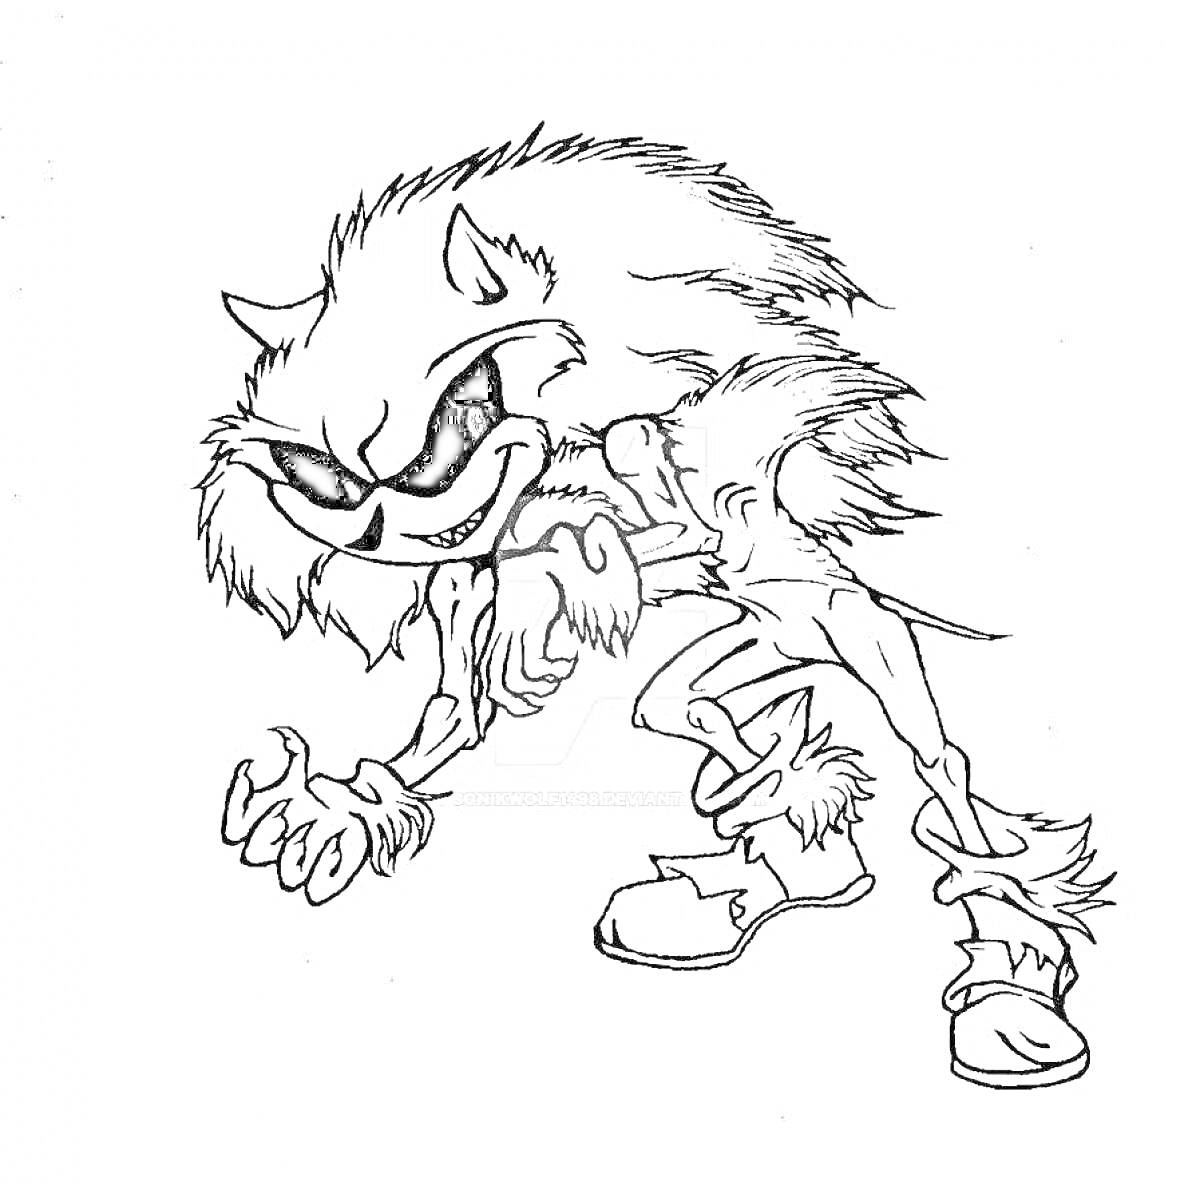 Раскраска Sonic.exe с острыми когтями и зубами, в угрожающей позе